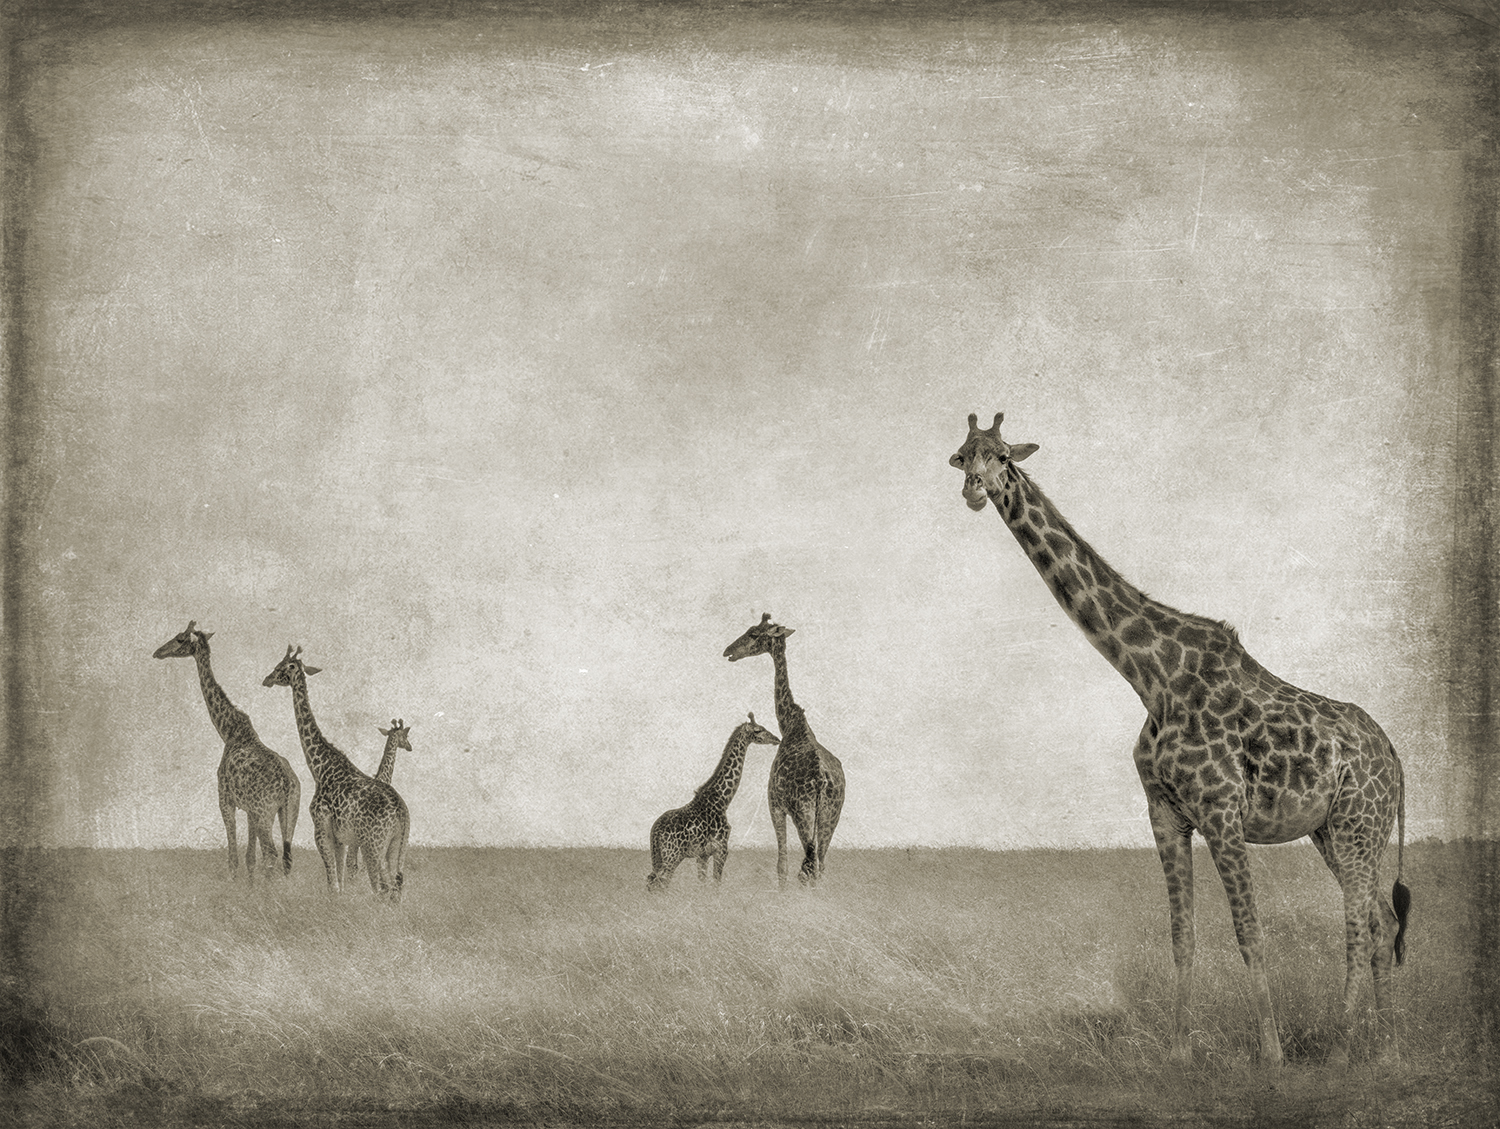 Six Giraffes